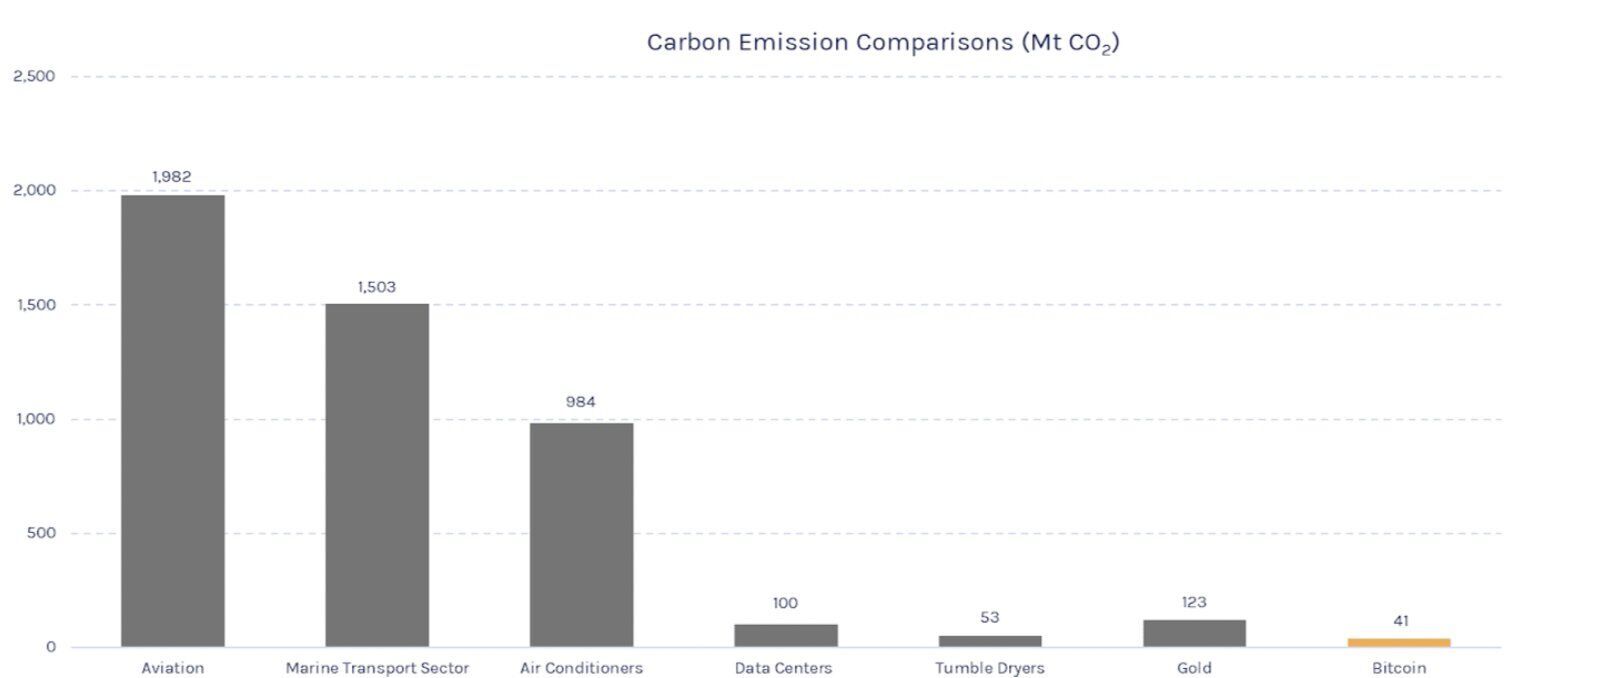 Выброс углекислого газа различными отраслями производства и услуг